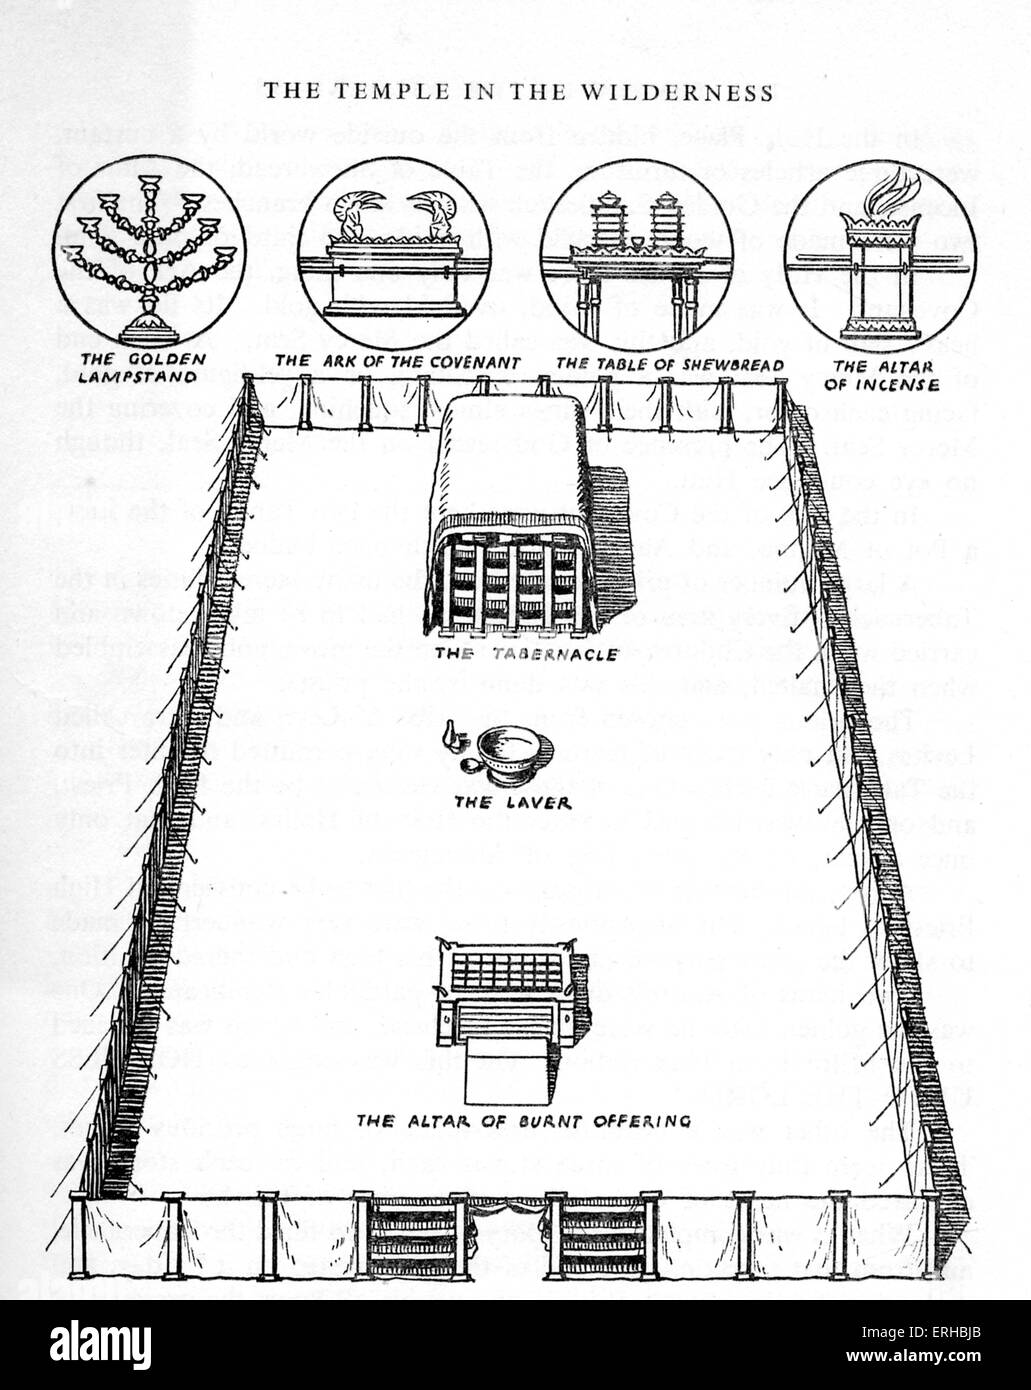 diagram of tabernacle - RohannaFyffe